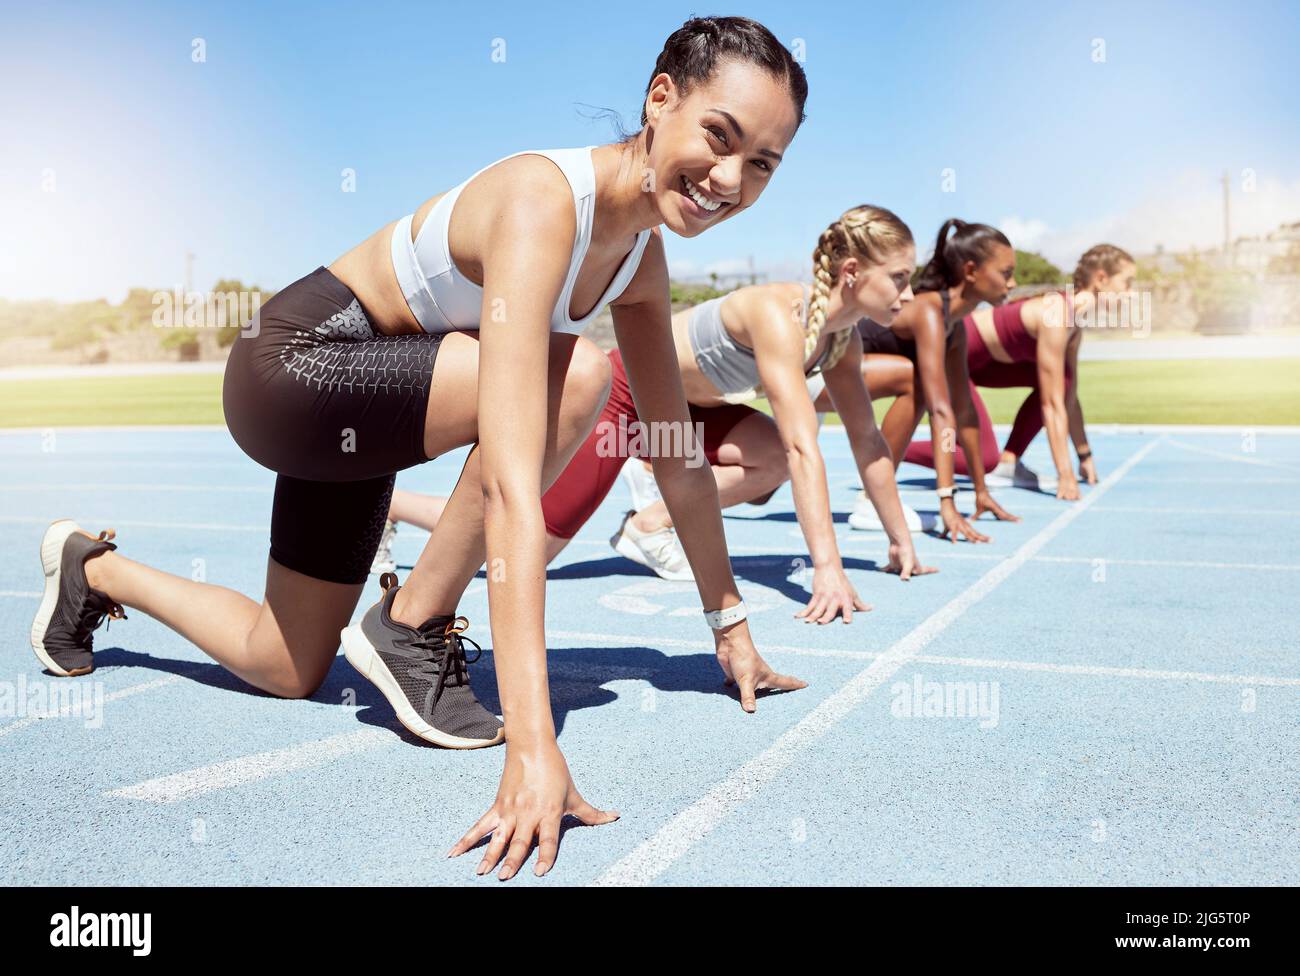 Porträt einer weiblichen Athletin motiviert und bereit, in Leichtathletik olympischen Ereignis zu konkurrieren. Vielfältige Gruppe von Frauen mit Wettkampffunktion Stockfoto